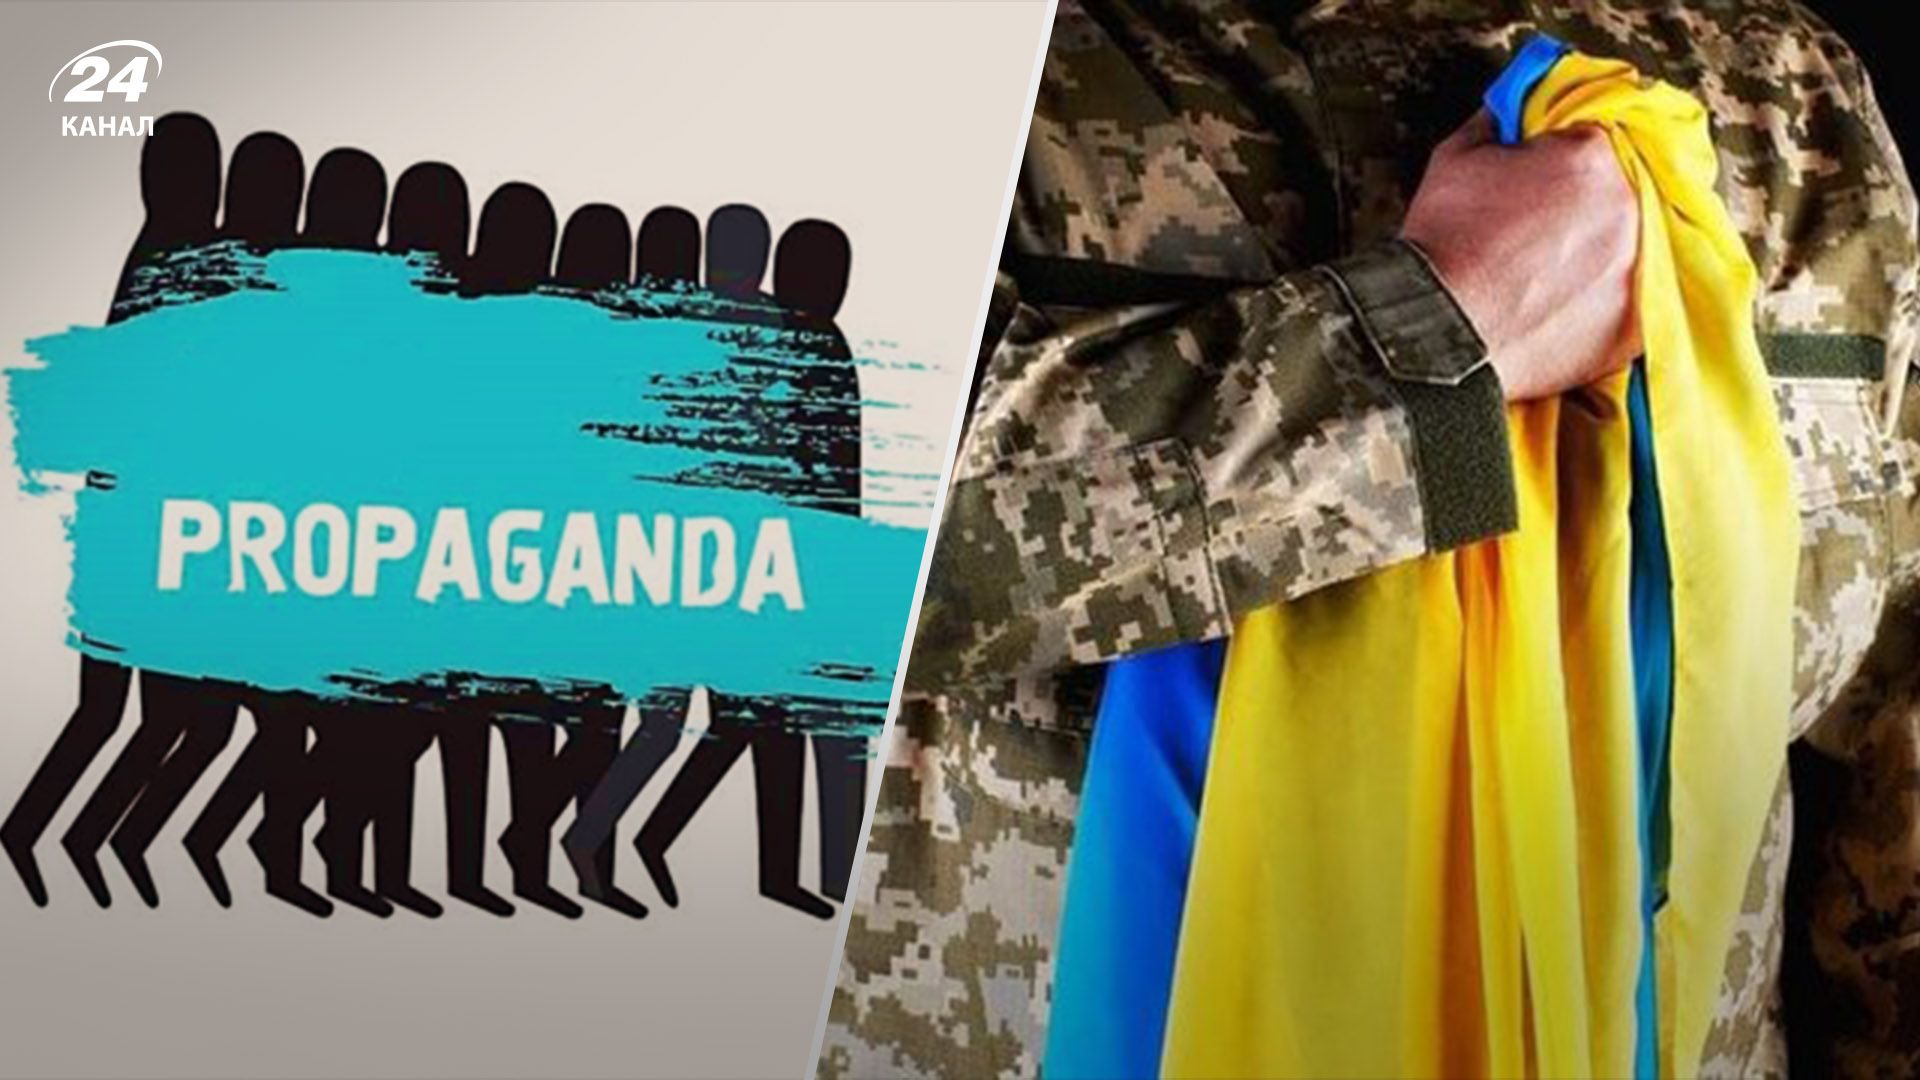 "Снова виновата Украина": пропагандисты бросились отбеливать видео с казнью пленника - 24 Канал